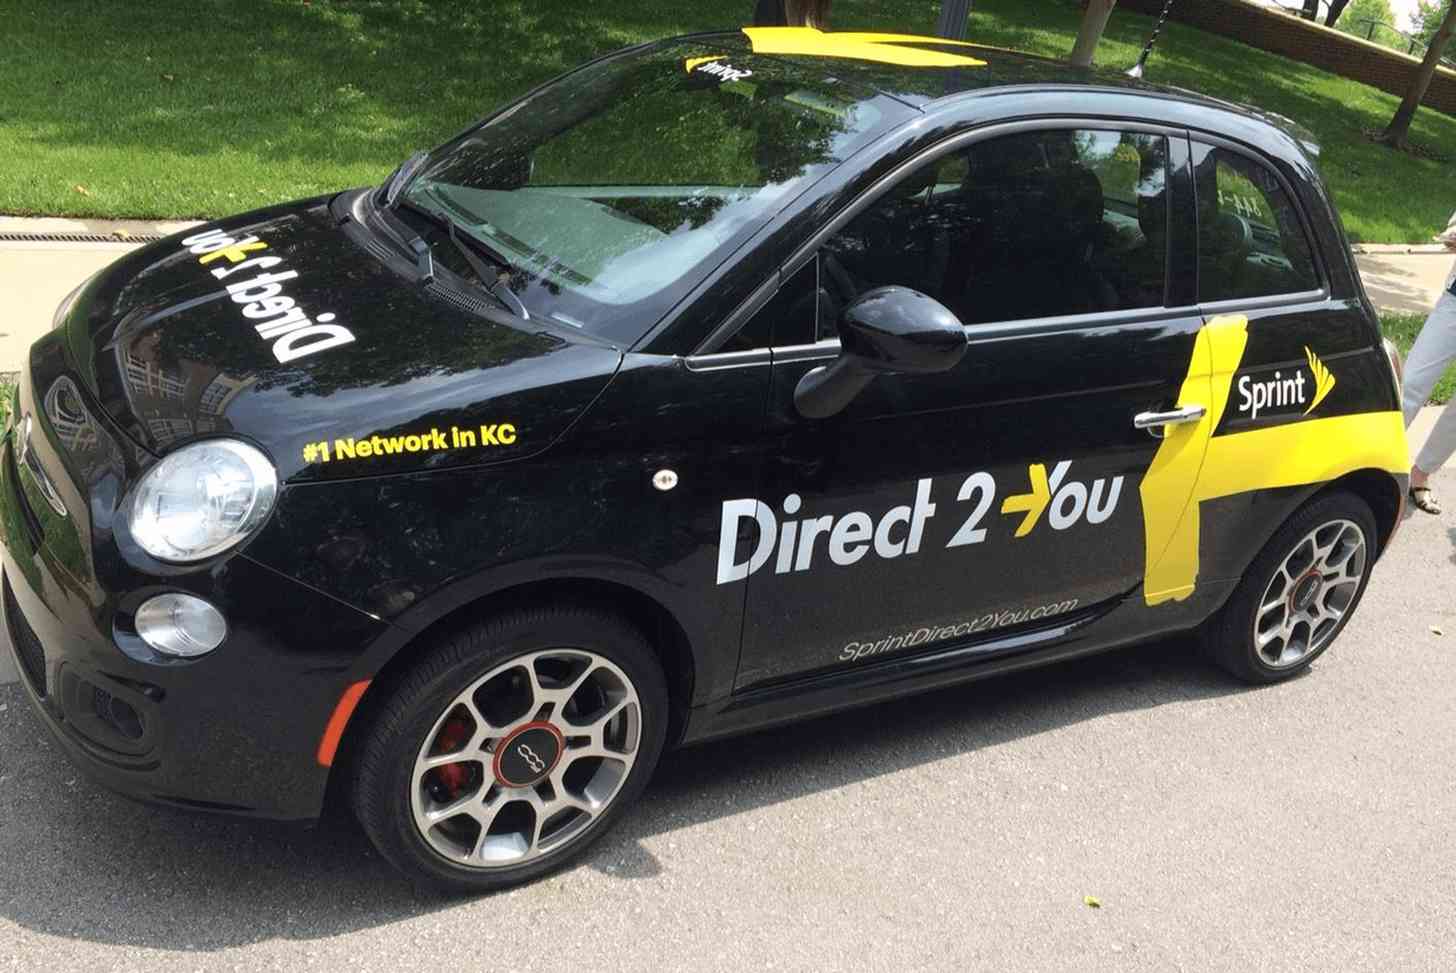 Sprint Direct 2 You car